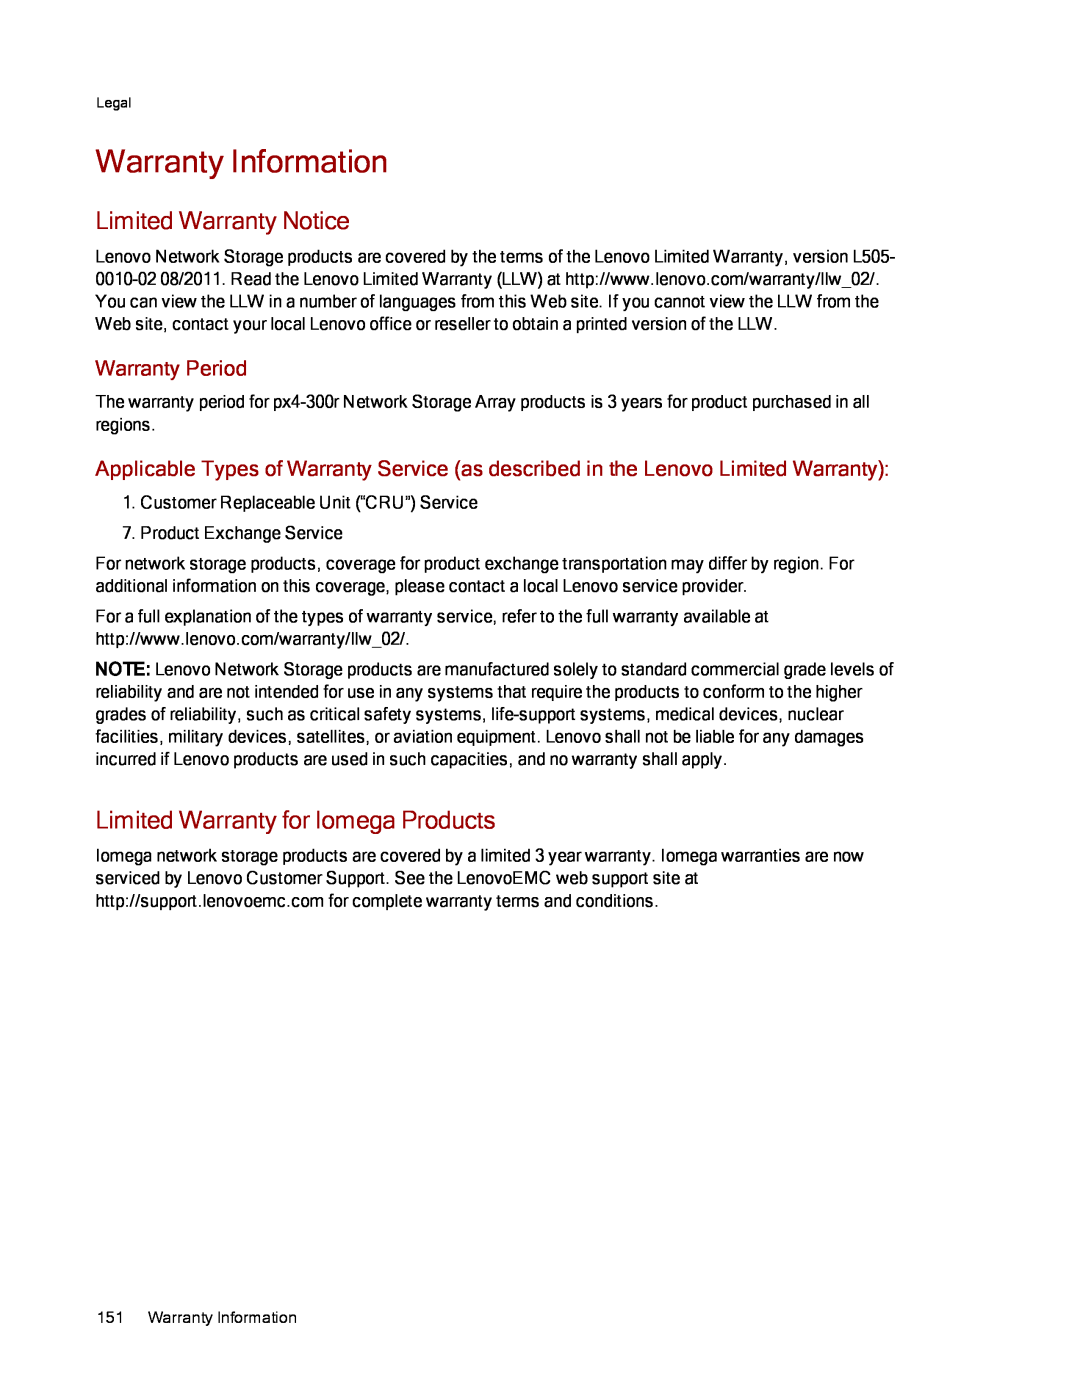 Lenovo 70BJ9005WW Warranty Information, Limited Warranty Notice, Limited Warranty for Iomega Products, Warranty Period 